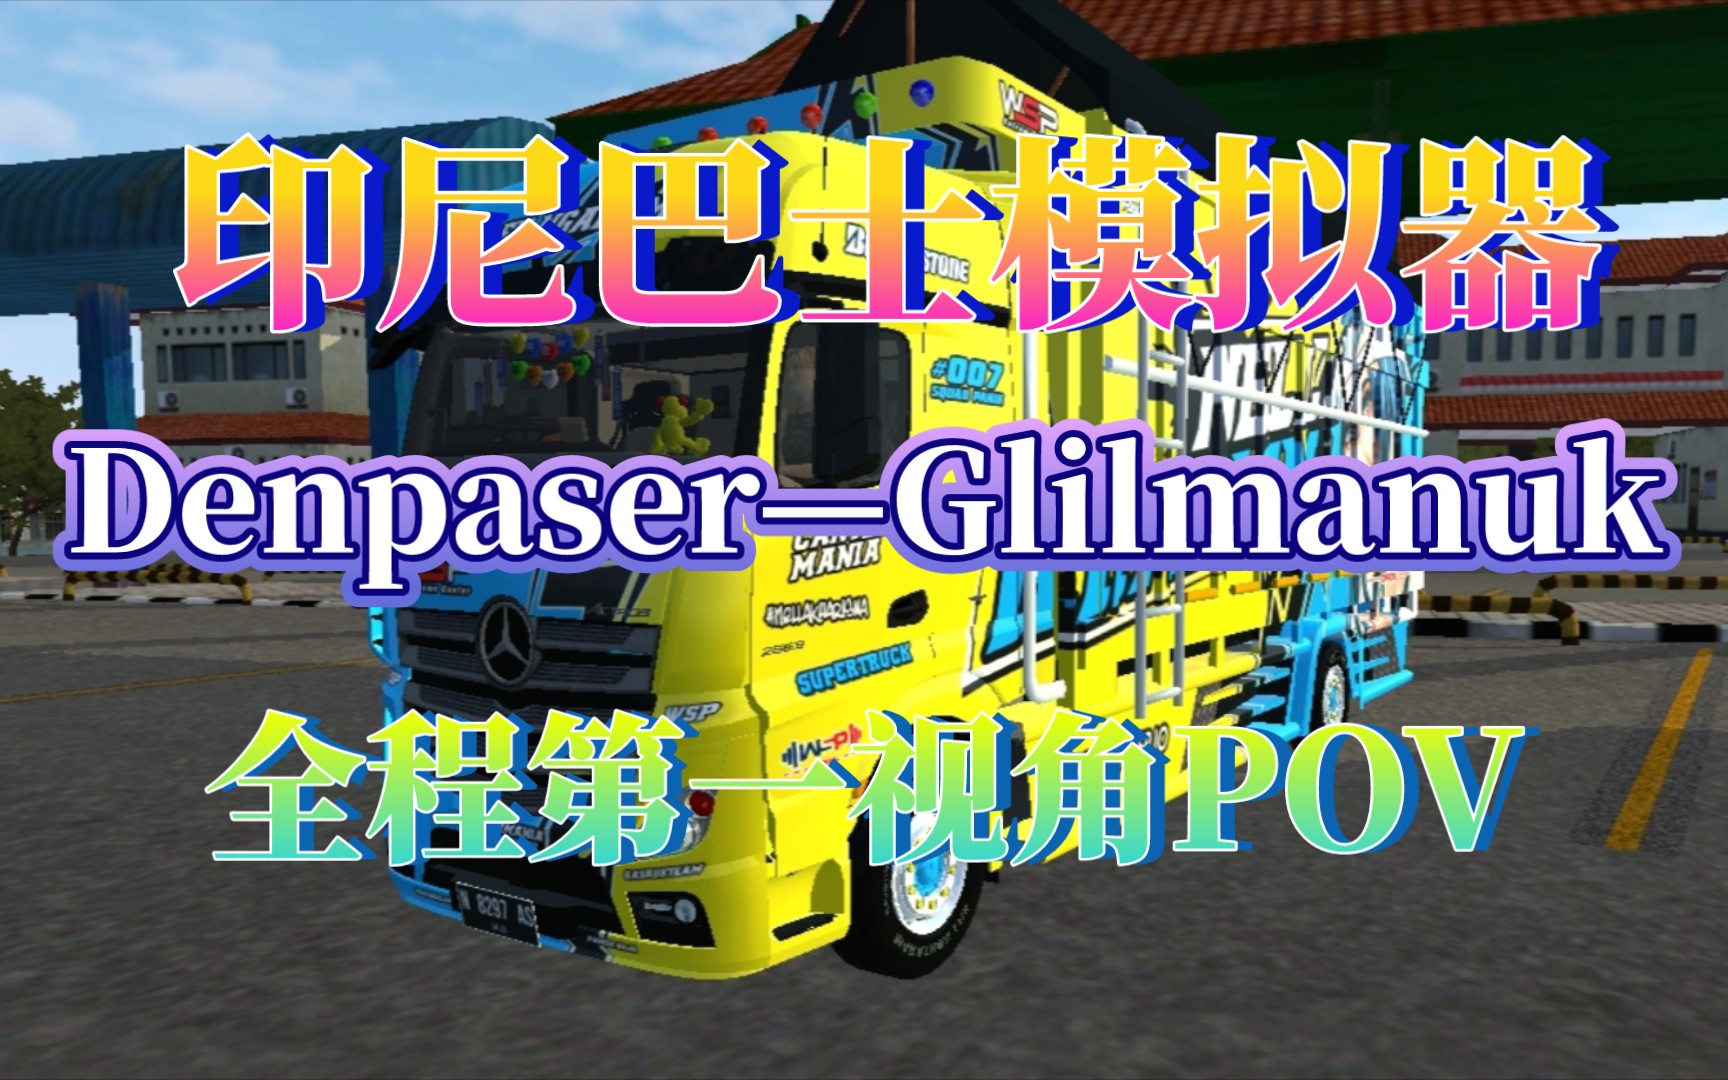 【印尼巴士模拟器01】denpaser—glilmanuk全程第一视角pov